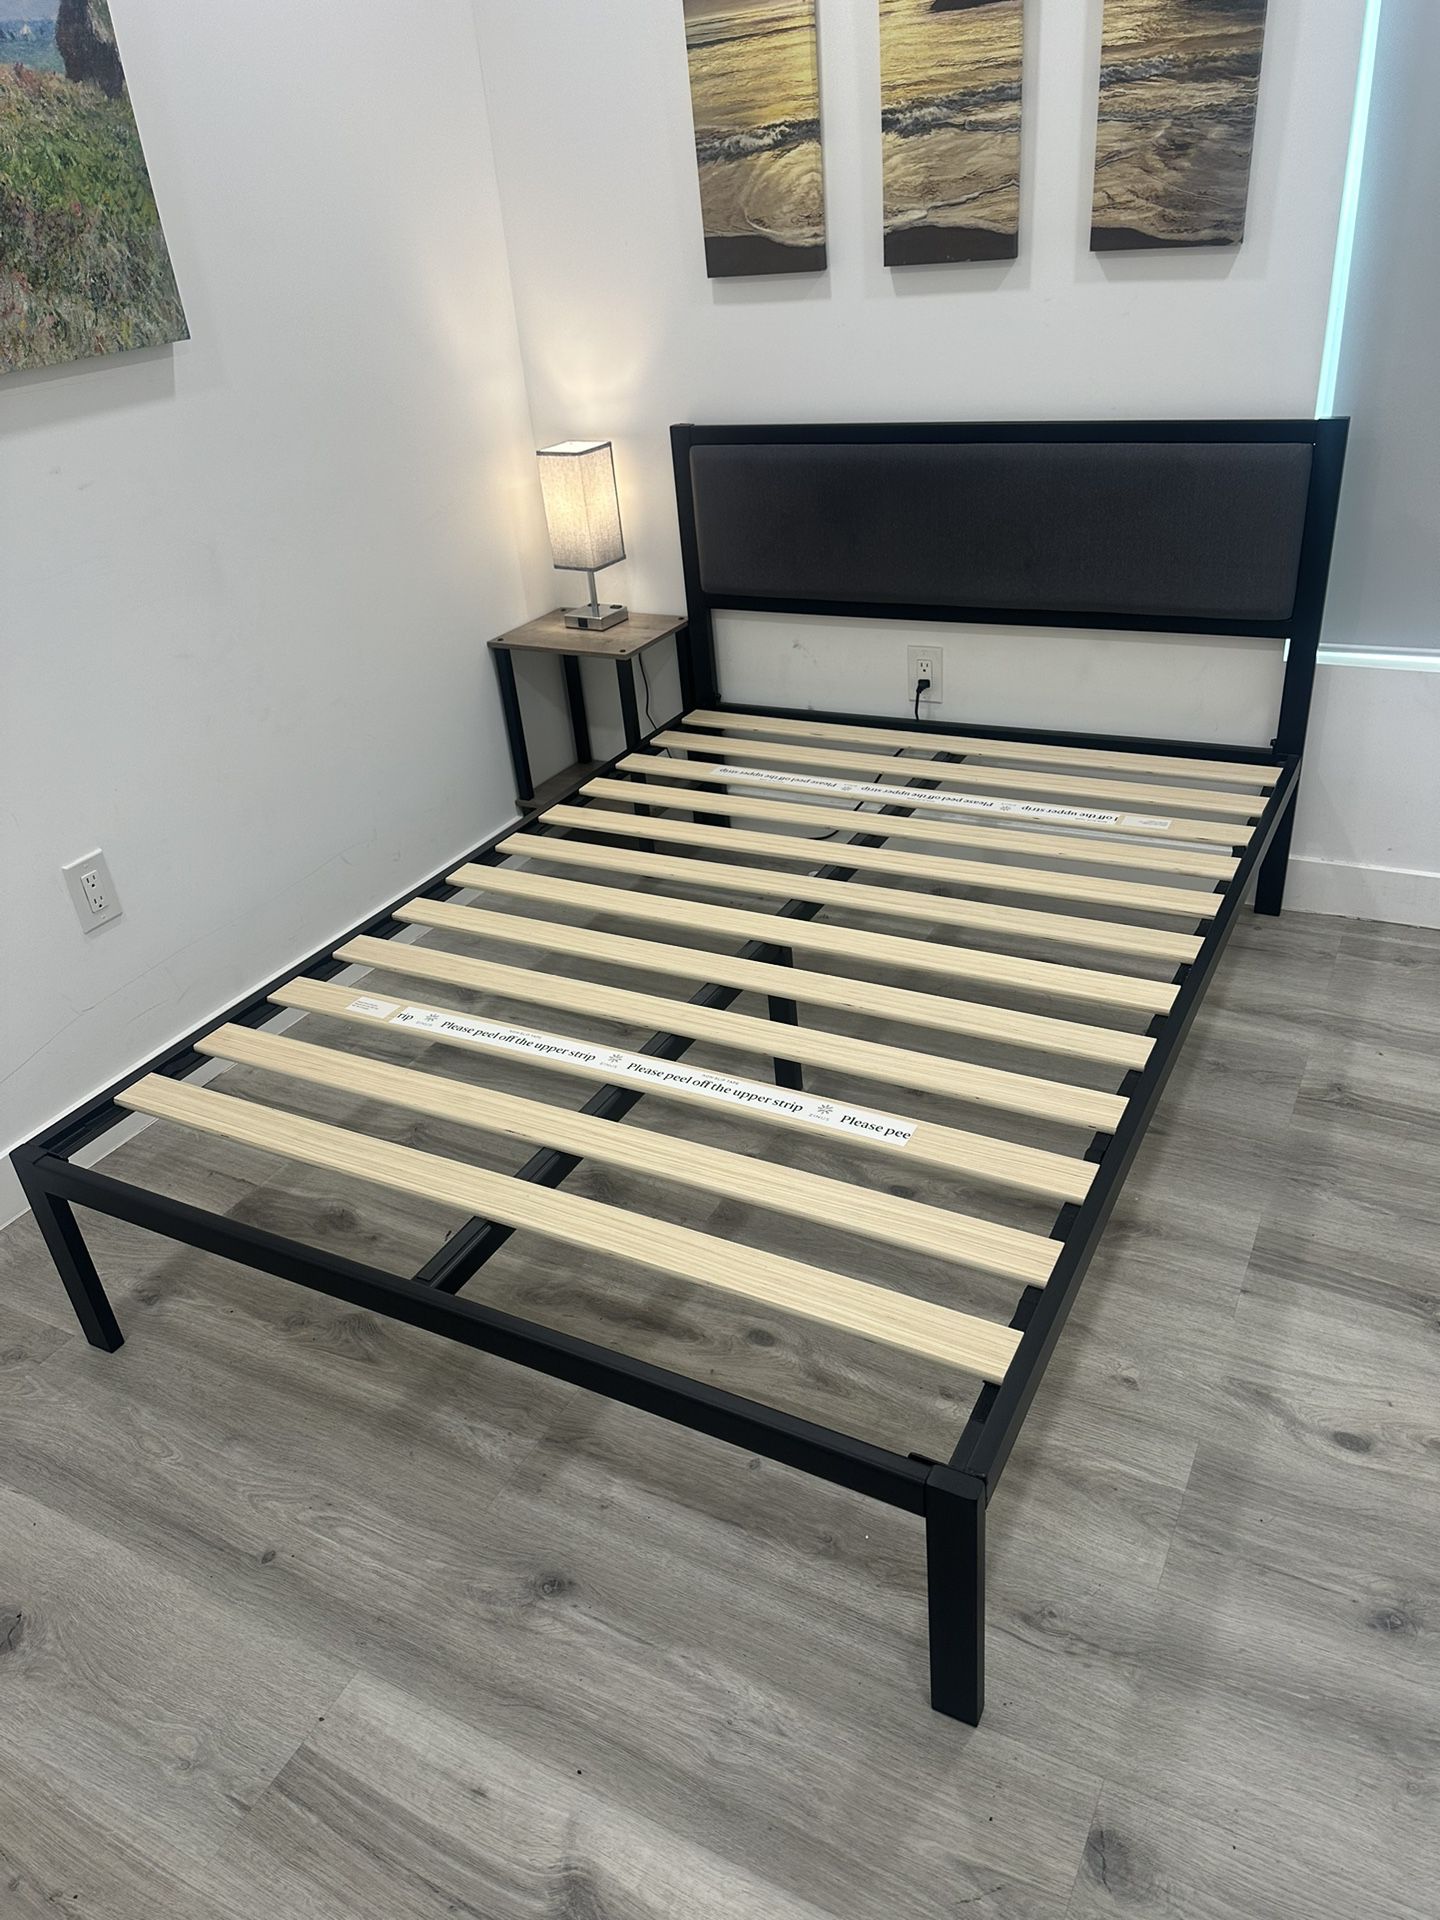 Bed frame (FULL)